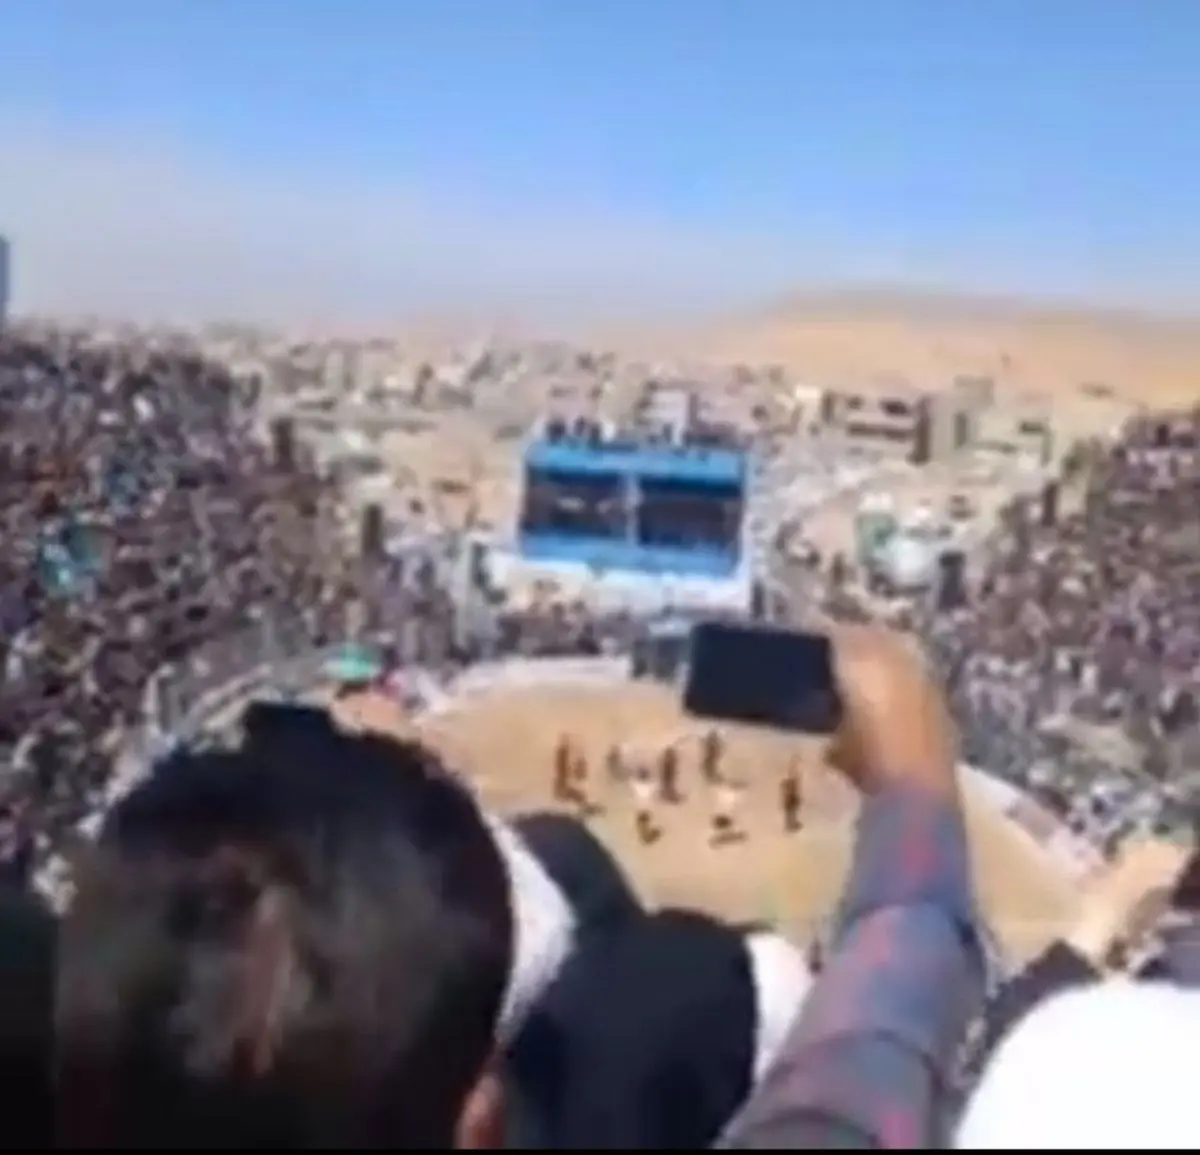 هفتاد هزار نفر خانم و آقا در کنار هم در گود چشمه زینل خان اسفراین در تماشای کشتی با چوخه+ویدئو 